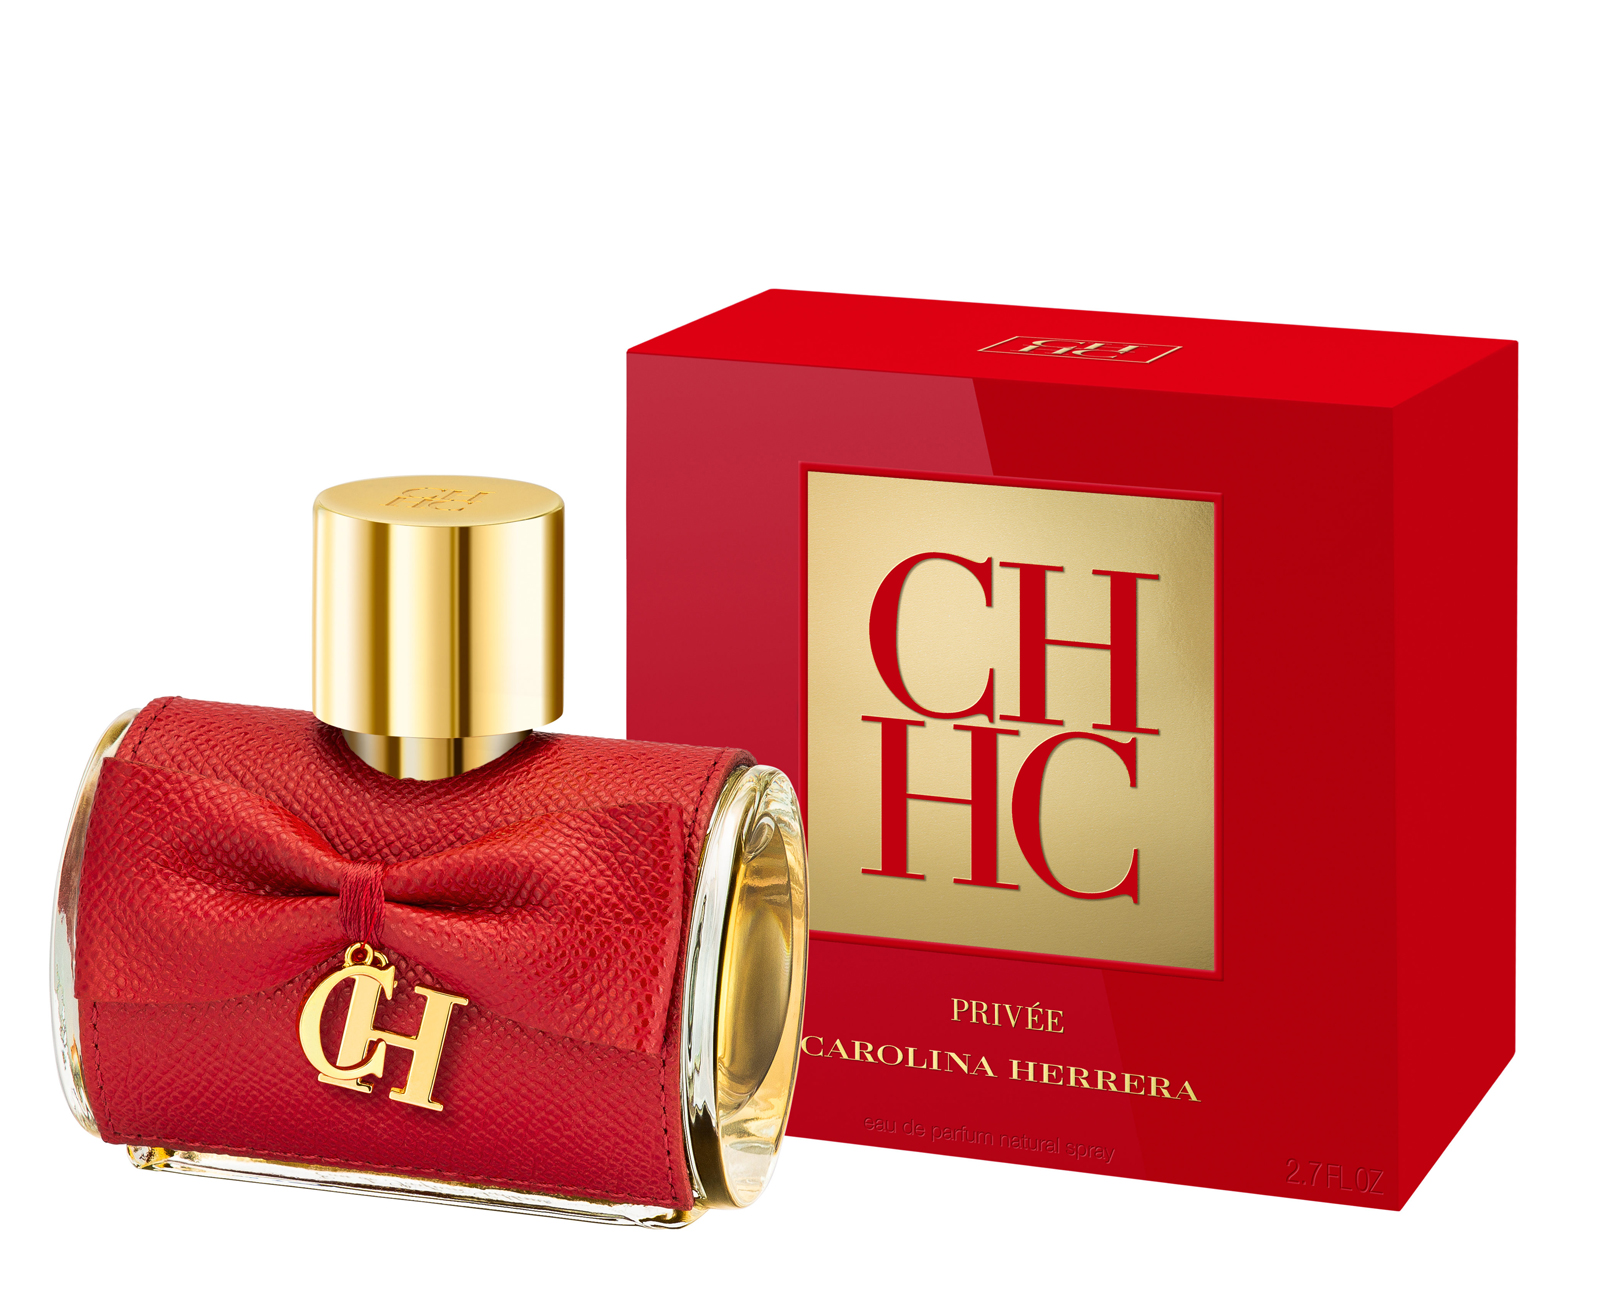 Parfum Carolina Herrera - Homecare24